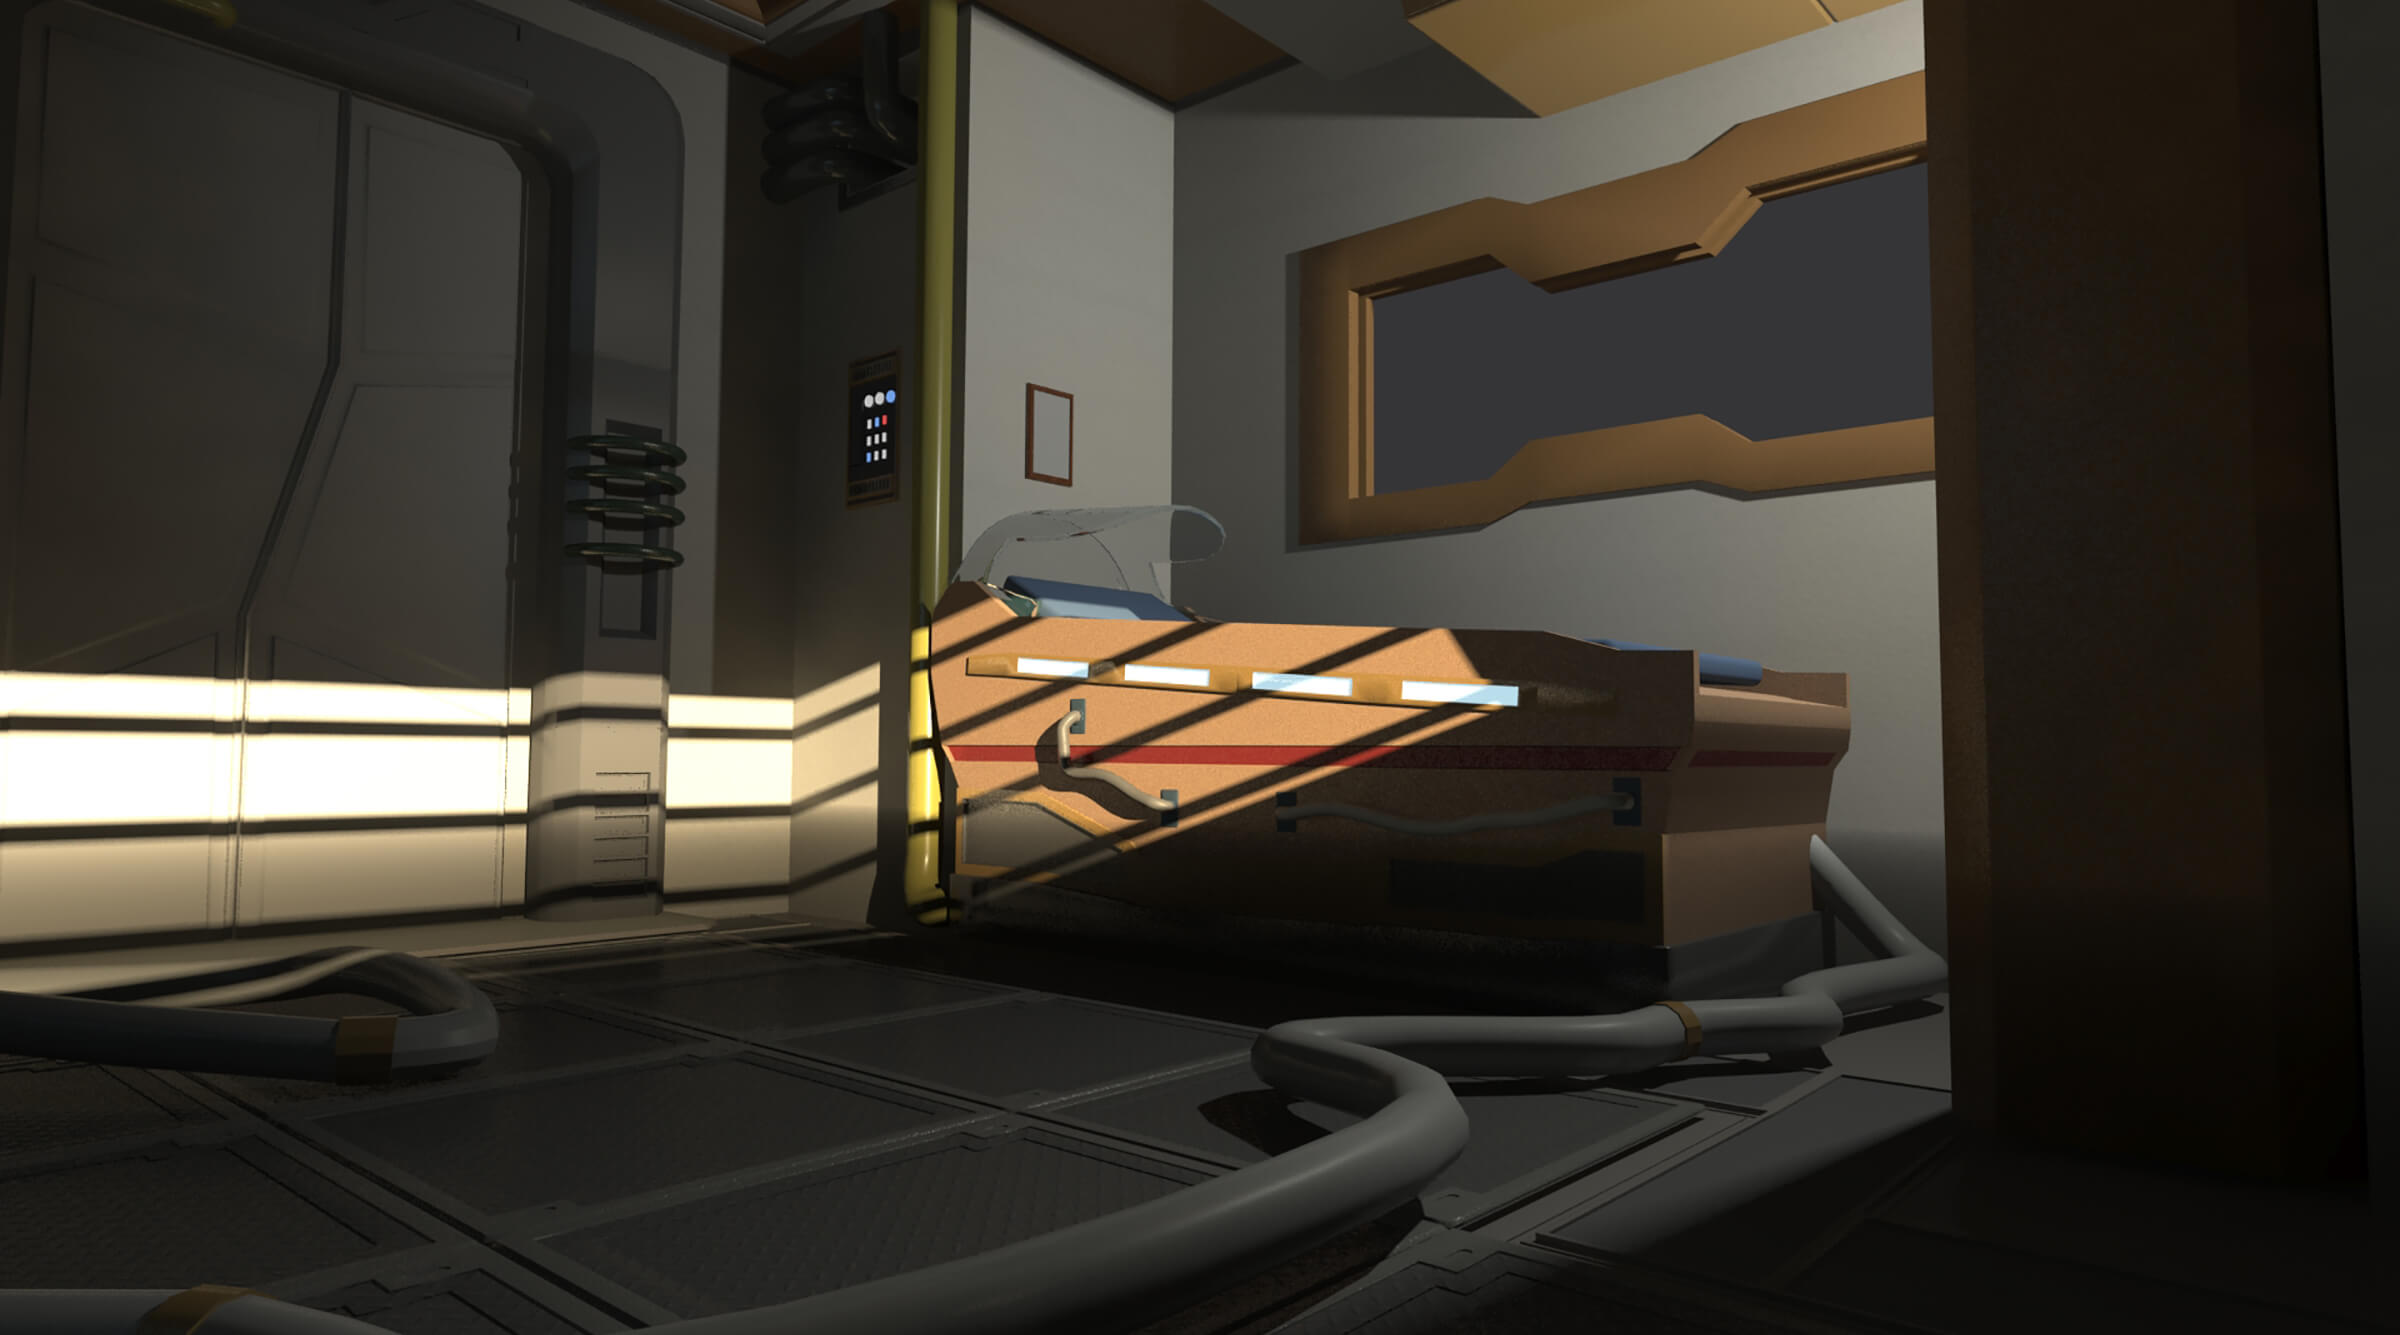 Una habitación con poca luz decorada en un estilo futurista prístino con un elaborado aparato para dormir visto desde un lado.